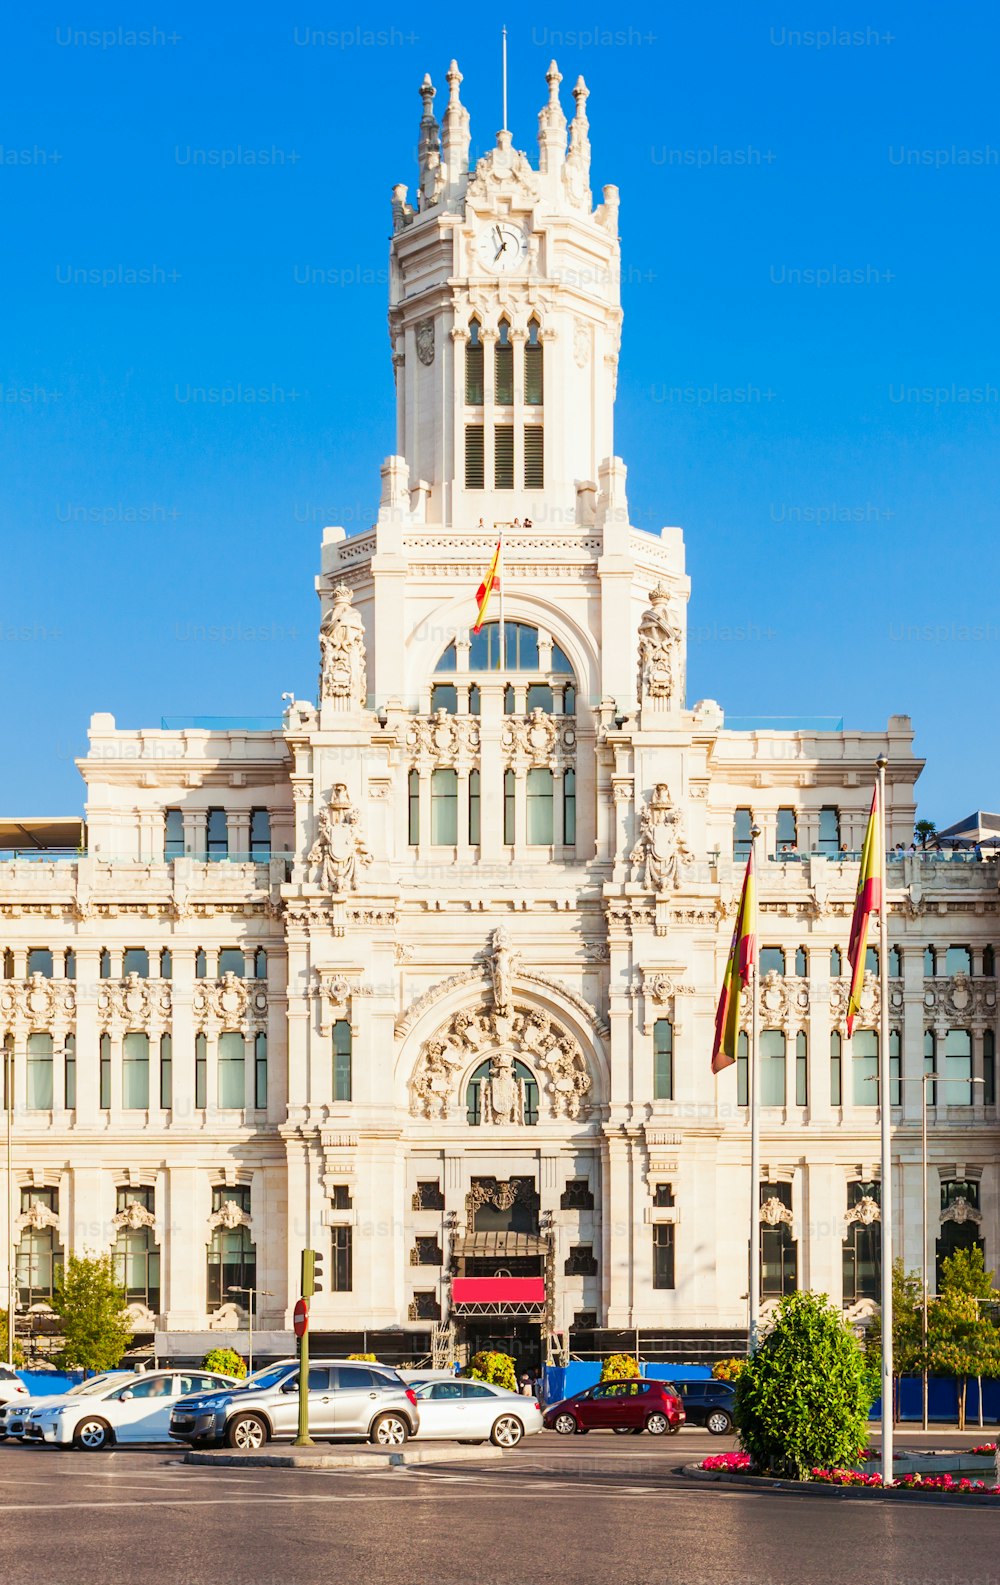 키벨레 궁전 또는 팔라시오 데 시벨레스 (Palacio de Cibeles) 는 스페인 마드리드 도심의 시벨레스 광장에 위치한 궁전이다.